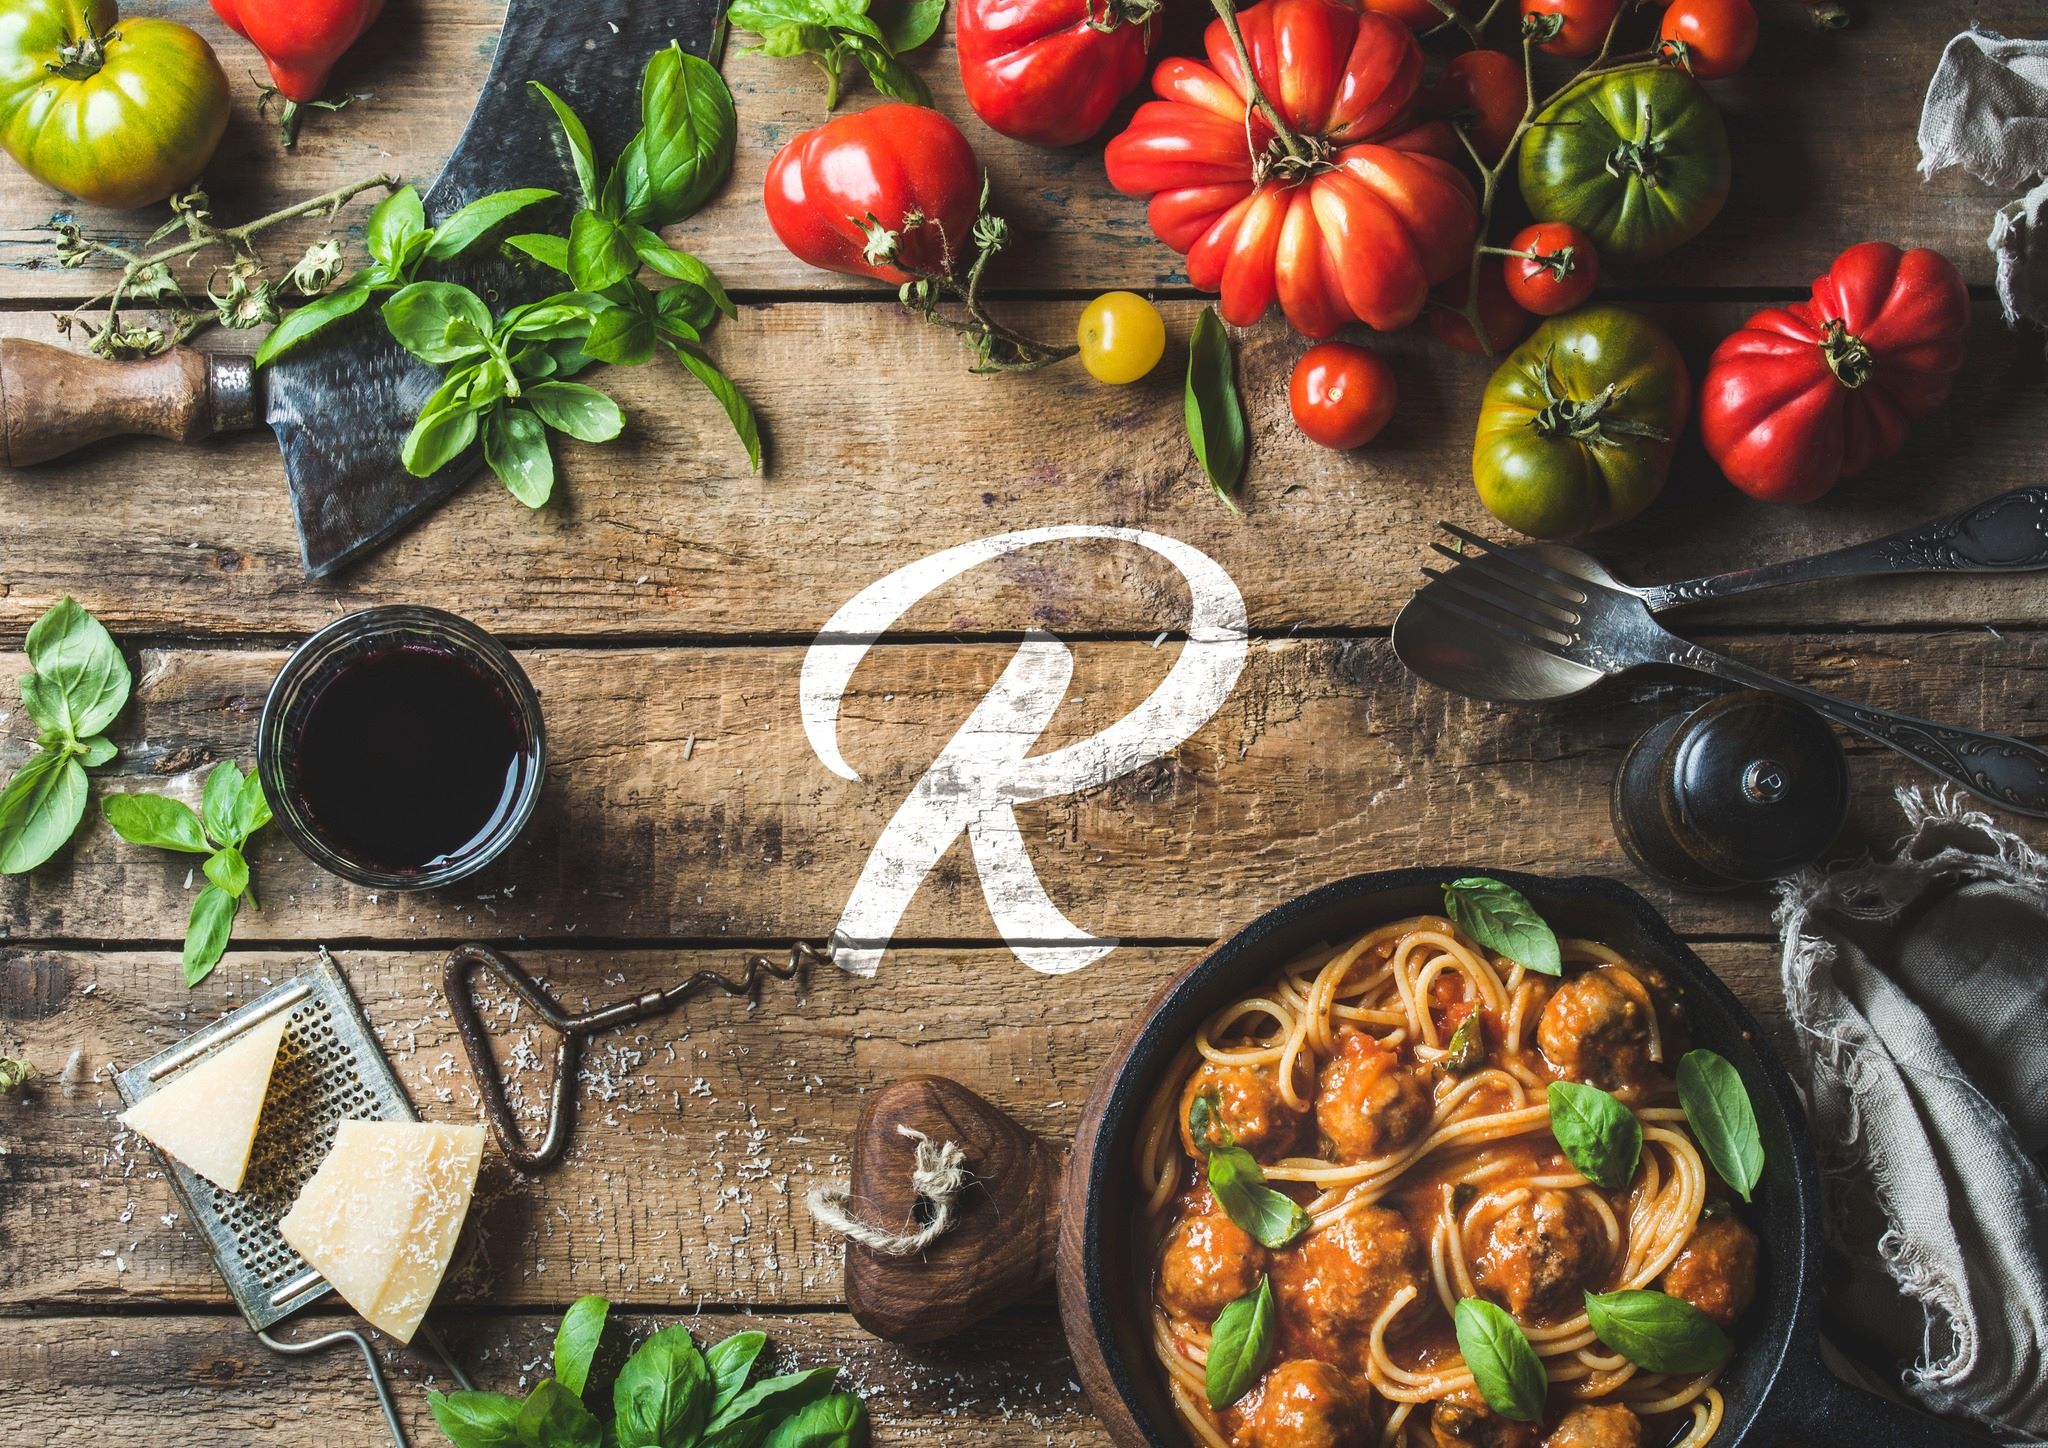 Roma's Italian Kitchen Grand Opening